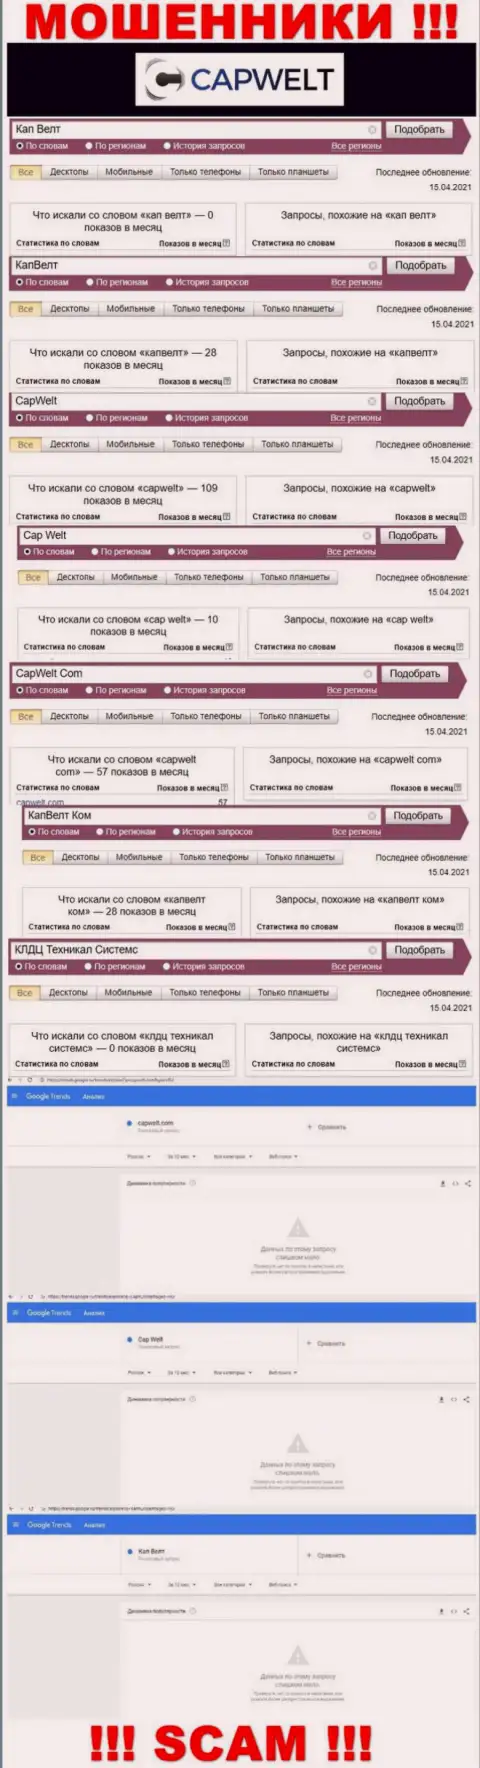 Число поисковых запросов информации о мошенниках CapWelt во всемирной интернет сети